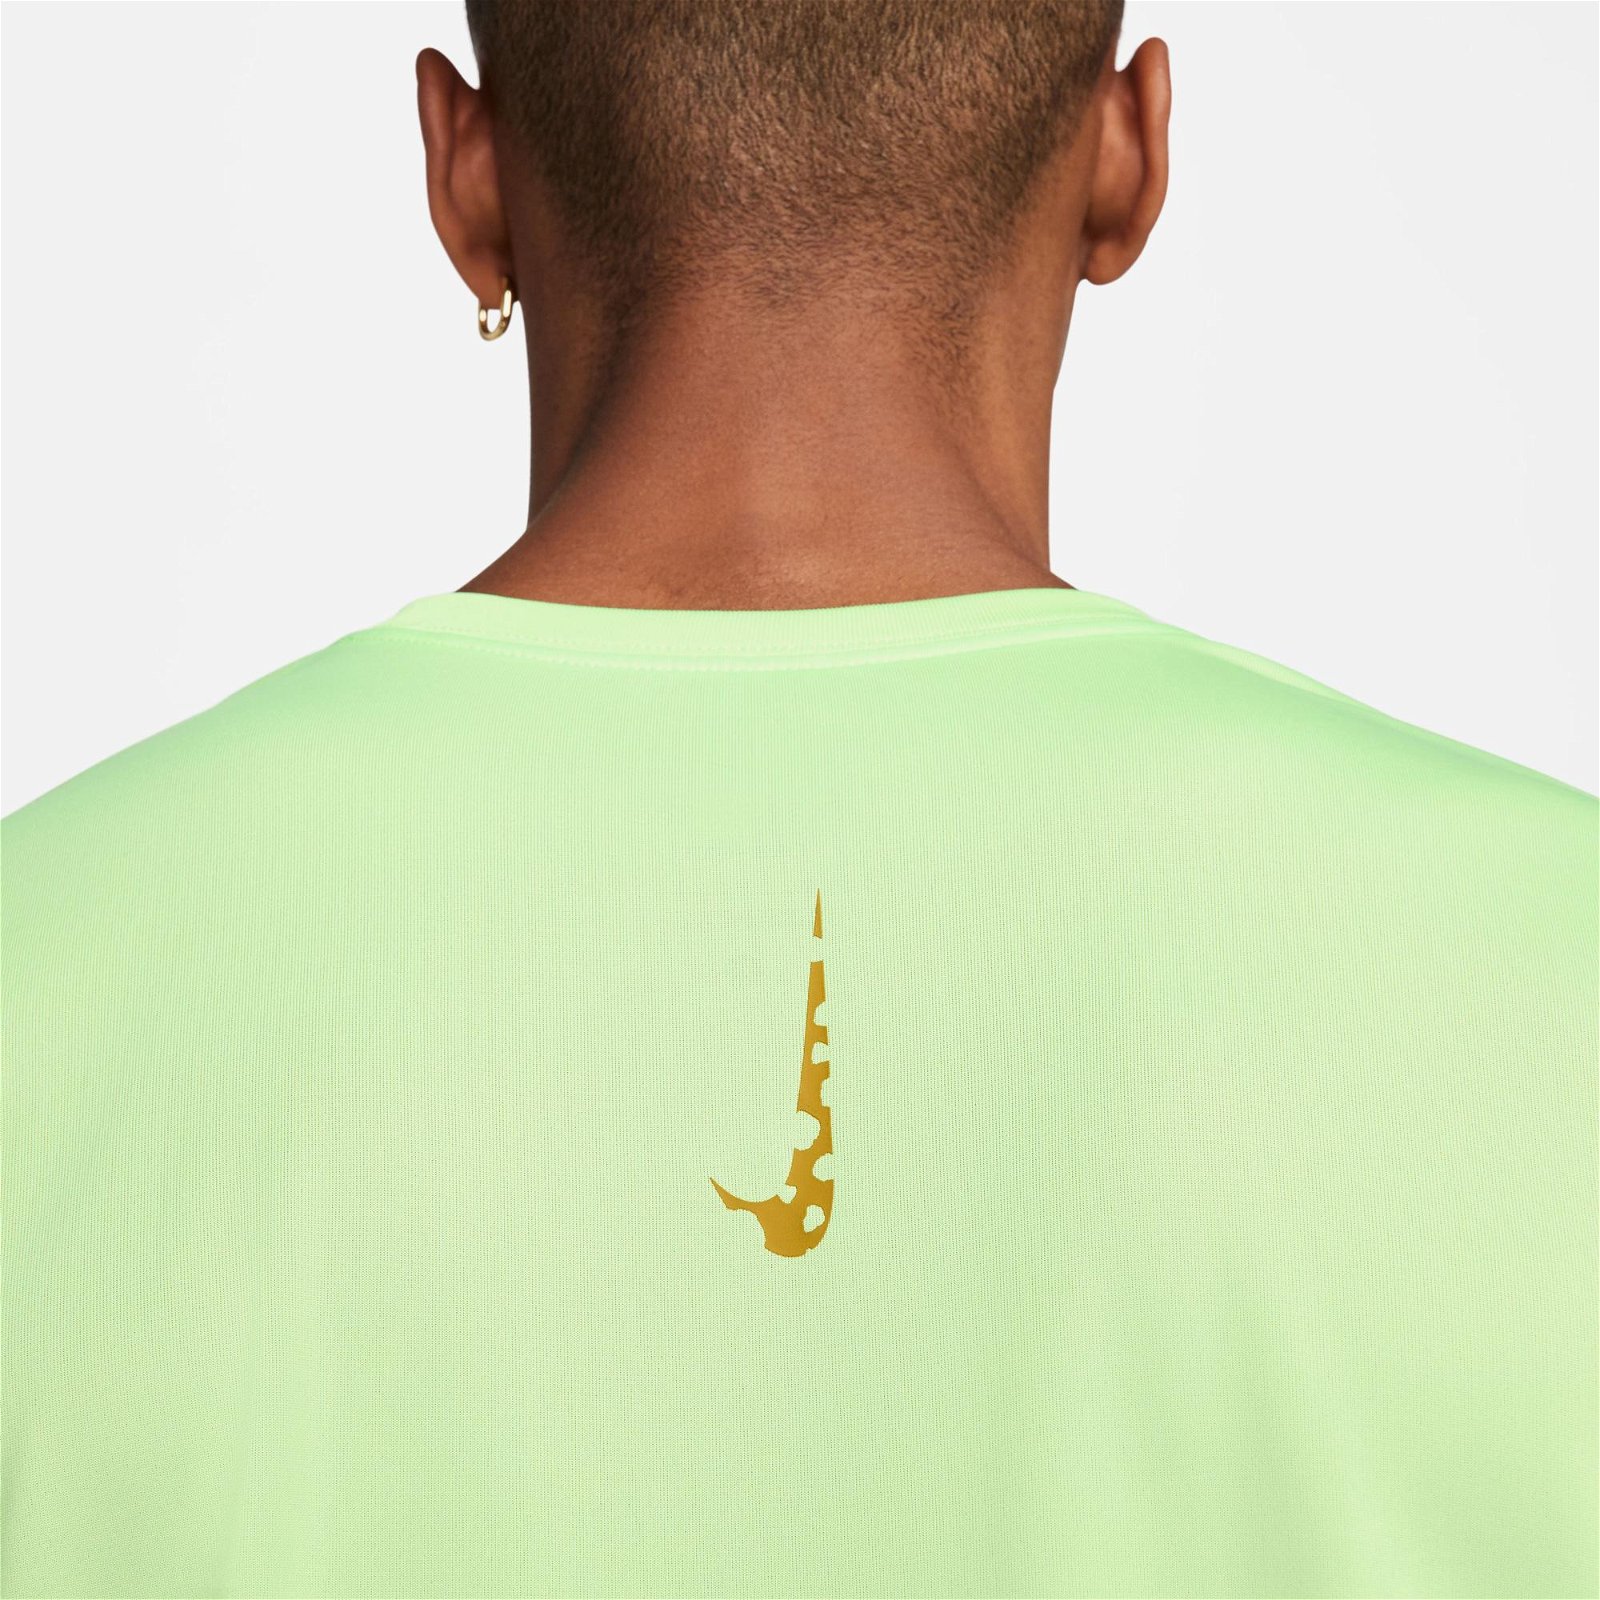 Nike Dri-FIT Erkek Yeşil T-Shirt